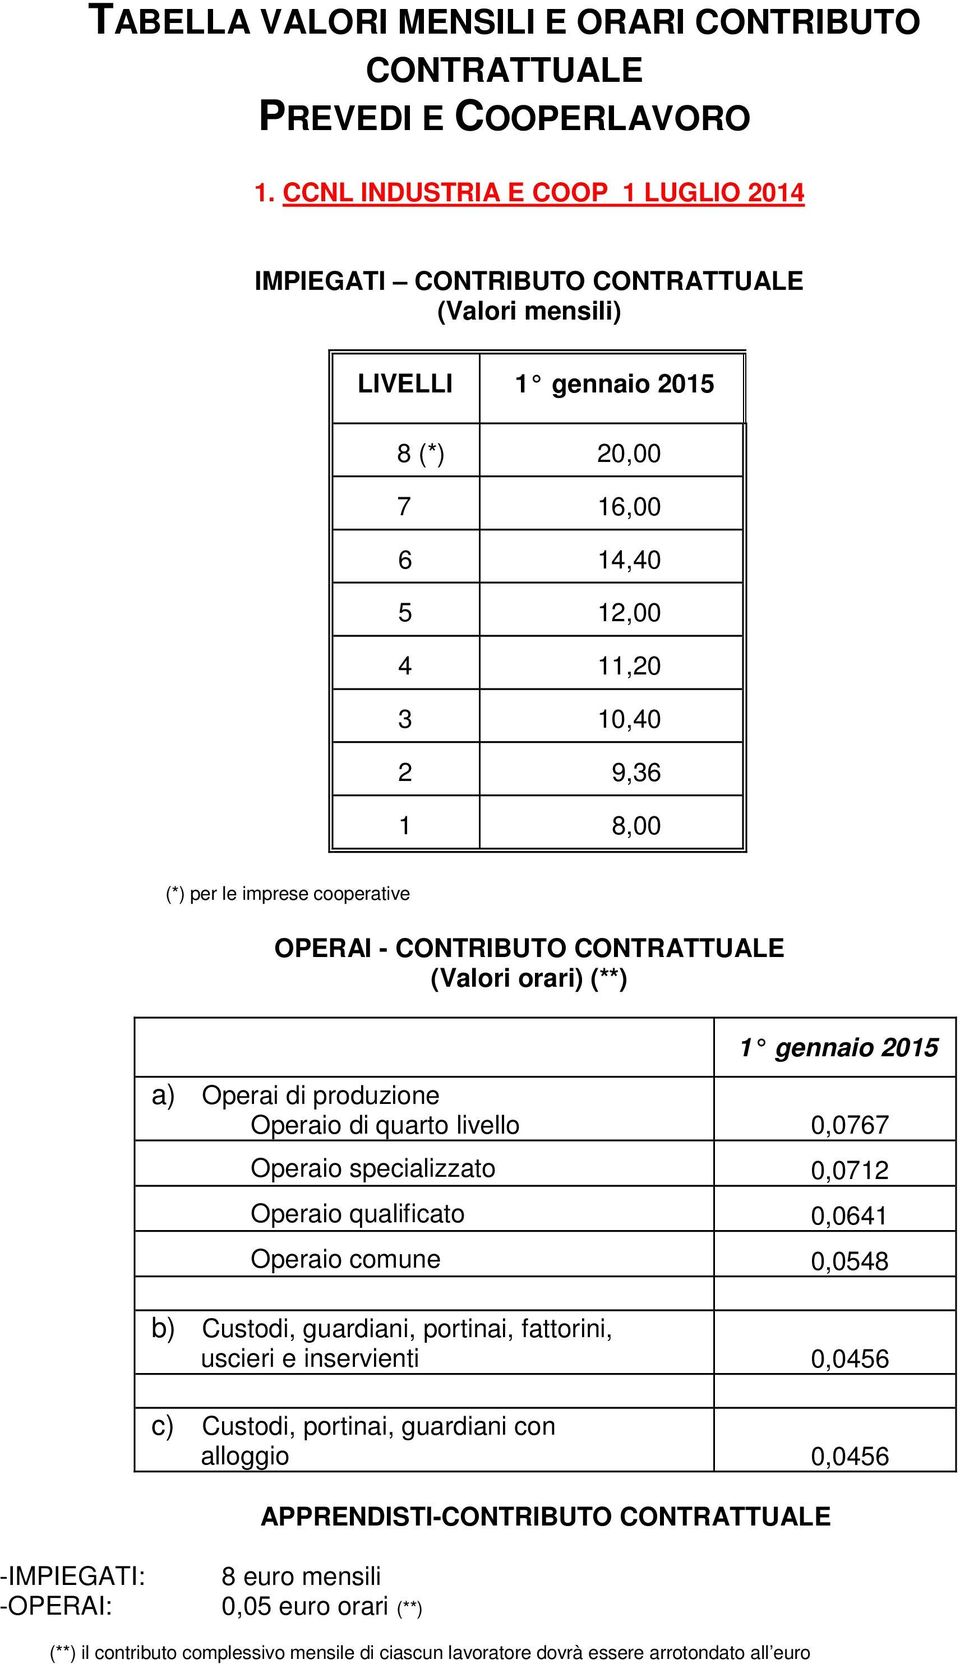 cooperative OPERA - CONTRBUTO CONTRATTUALE (Valori orari) (**) 1 gennaio 2015 a) Operai di produzione Operaio di quarto livello 0,0767 Operaio specializzato 0,0712 Operaio qualificato 0,0641